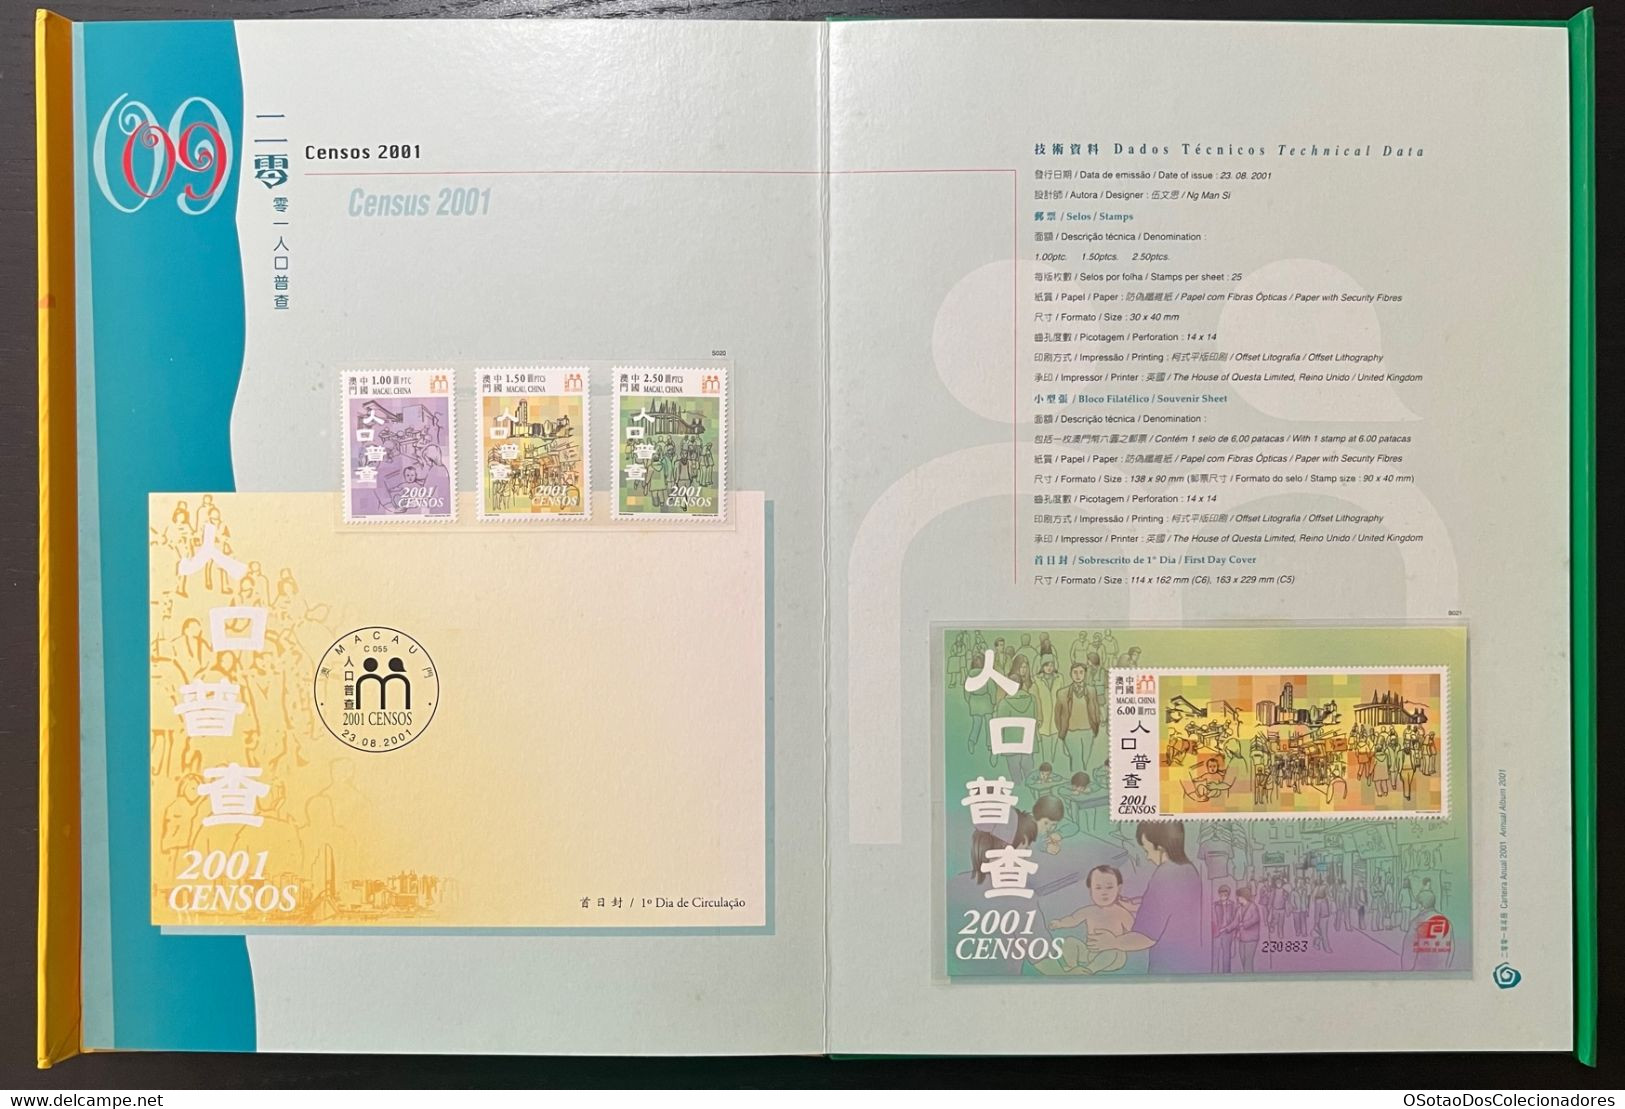 Macau Macao - China Chine - Annual Album 2001 - Macao's Stamps - Livro Anual de Selos de Macau 2001 - Carteira Jaarboek